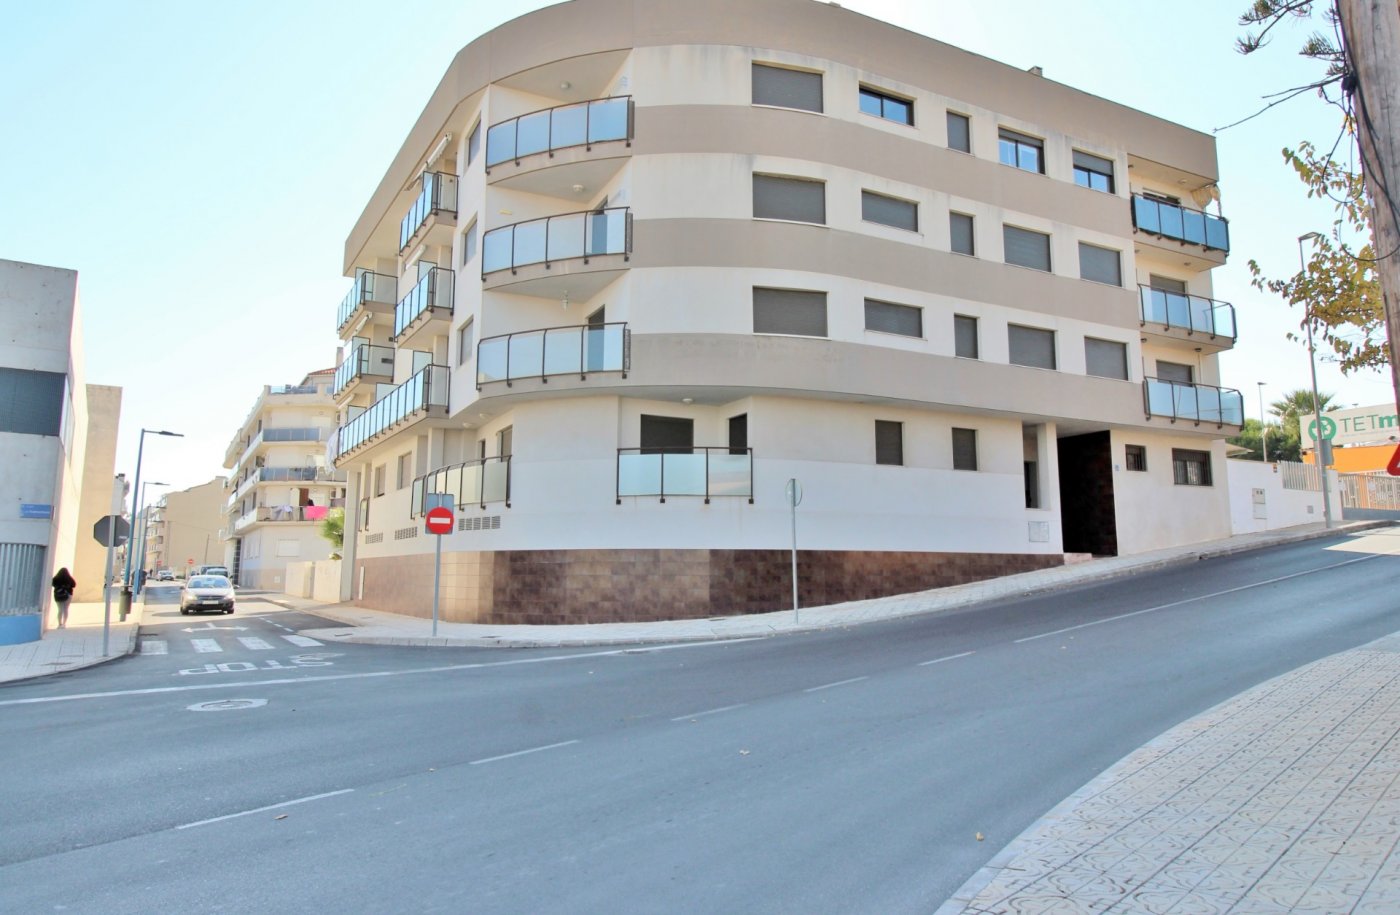 Apartamento en Peñiscola (LLANDELLS). Ref. 12-45-01736